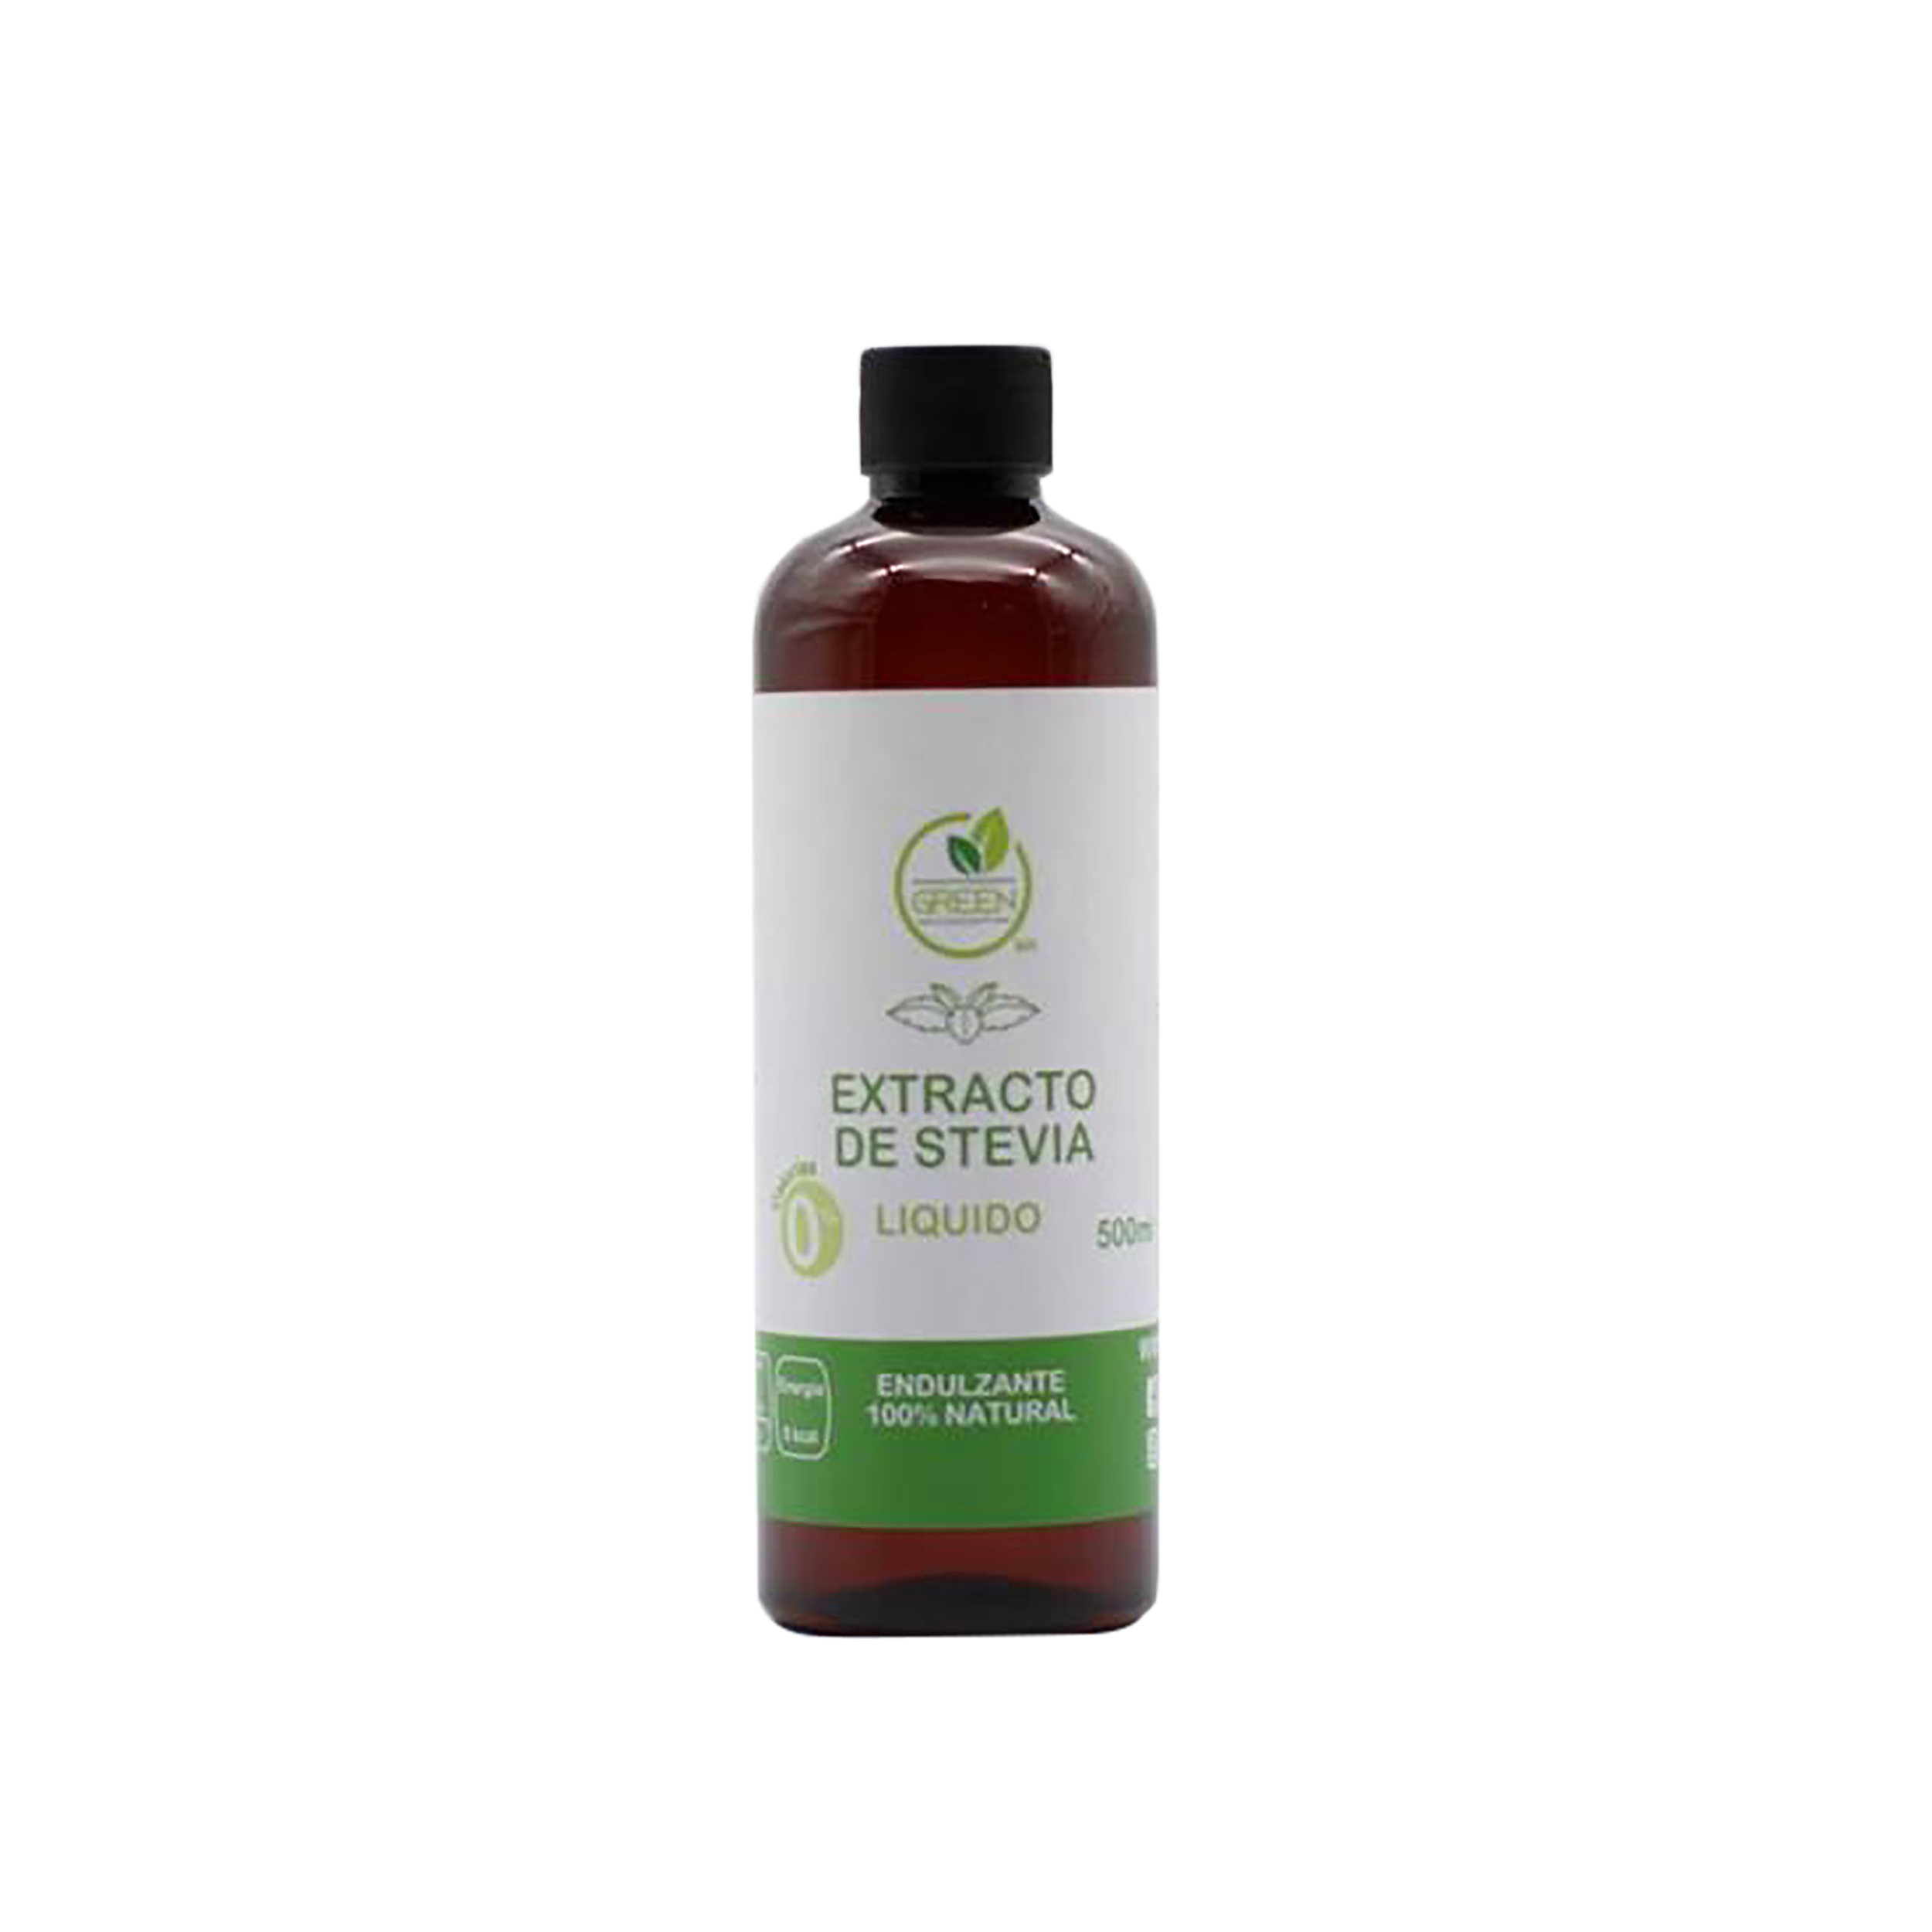 Green concept -Extracto de stevia